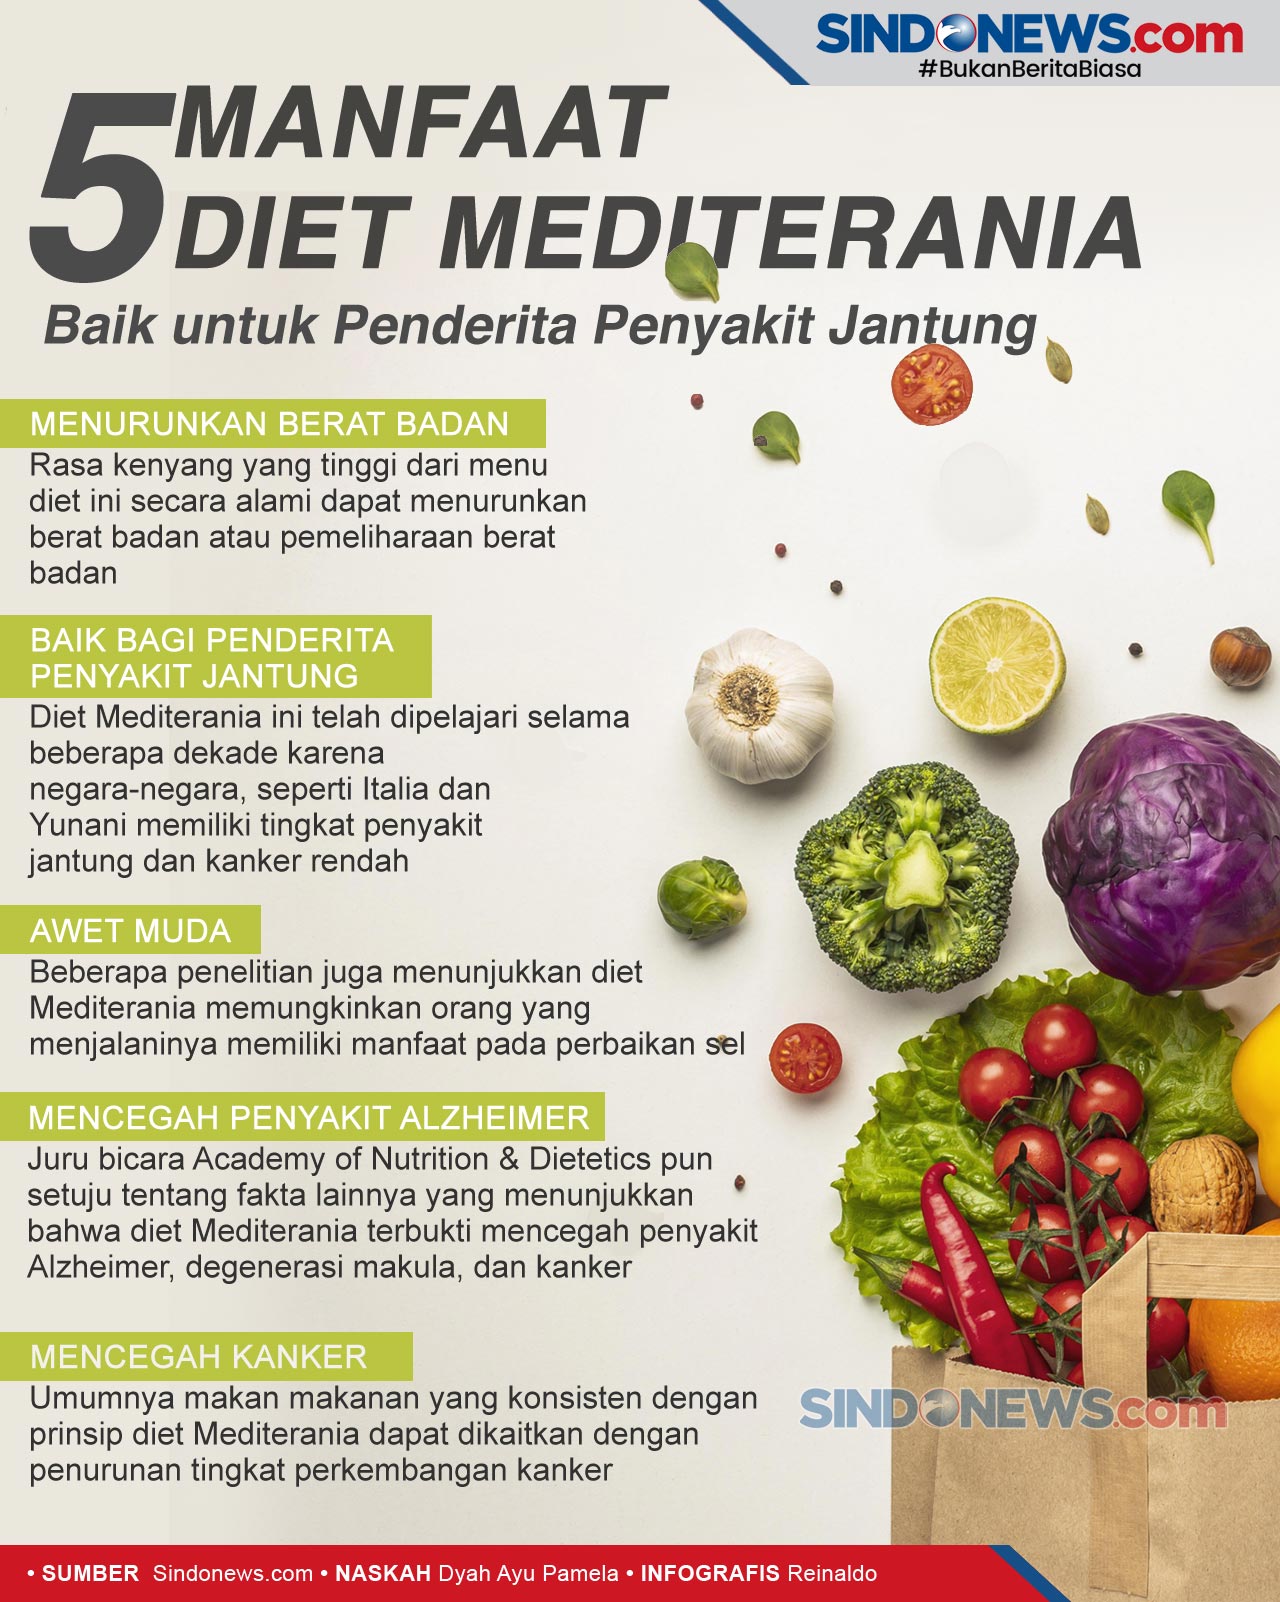 Sindografis Manfaat Diet Mediterania Baik Untuk Penderita Penyakit